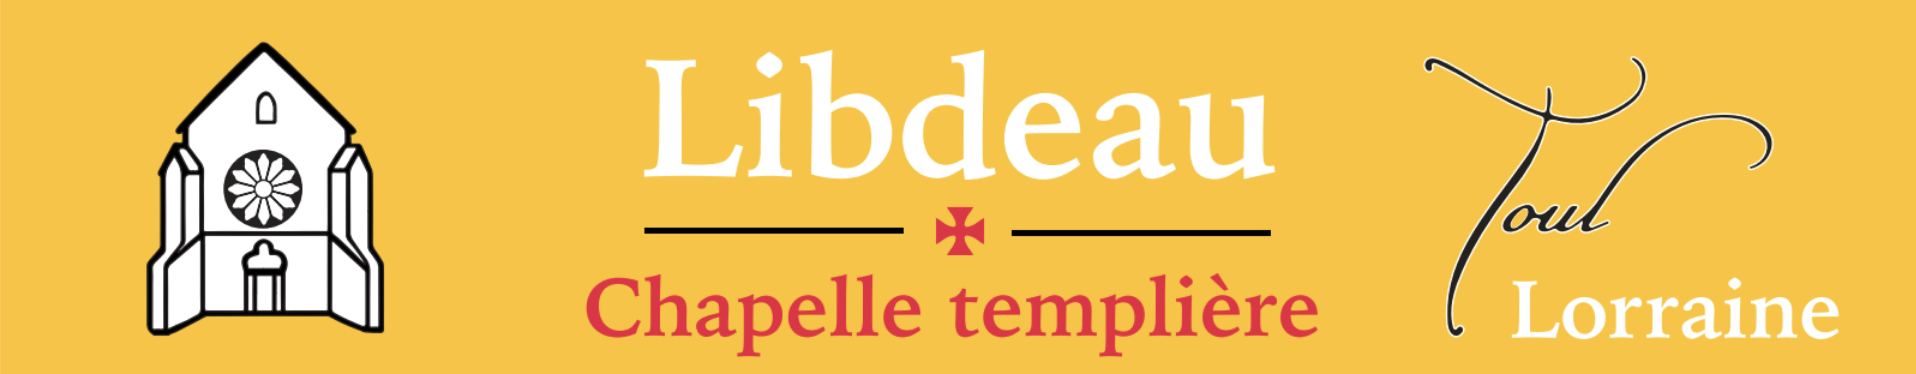 Libdeau - Chapelle Templière